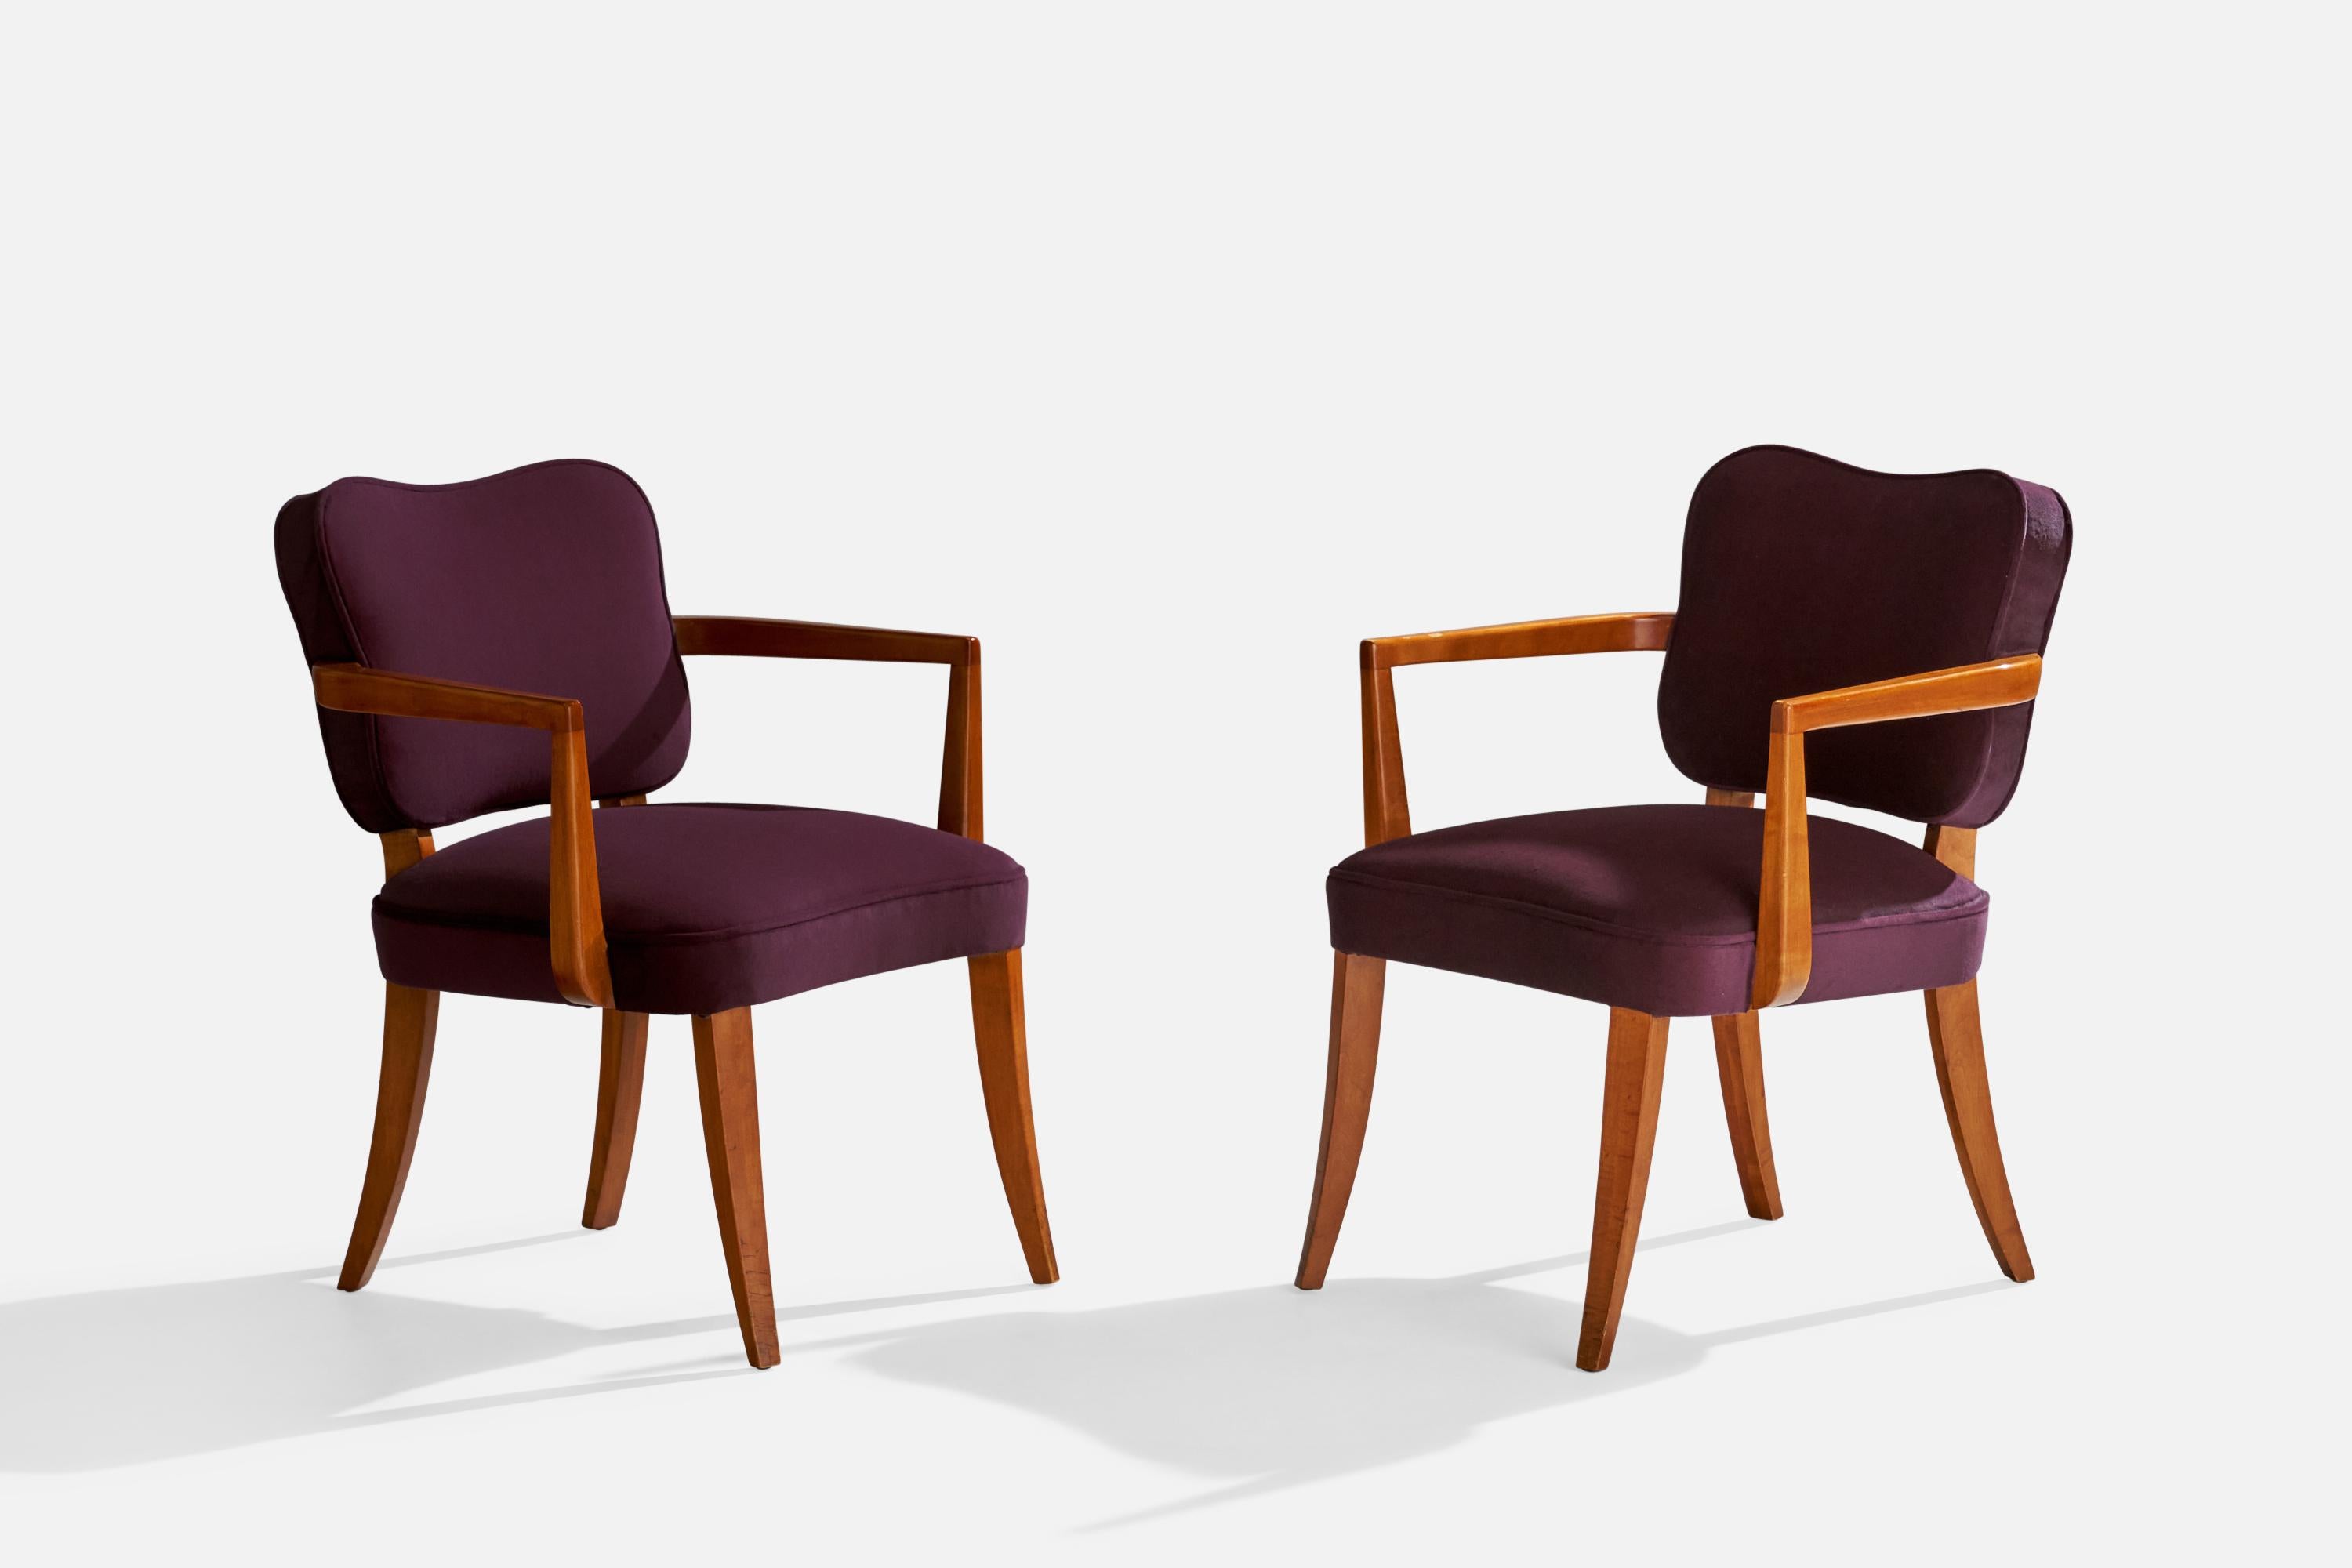 Paire de fauteuils en bois de cerisier et en velours violet conçus par Gilbert Rohde et produits par Herman Miller, Zeeland, Michigan, années 1940. 

Hauteur du siège 17.5